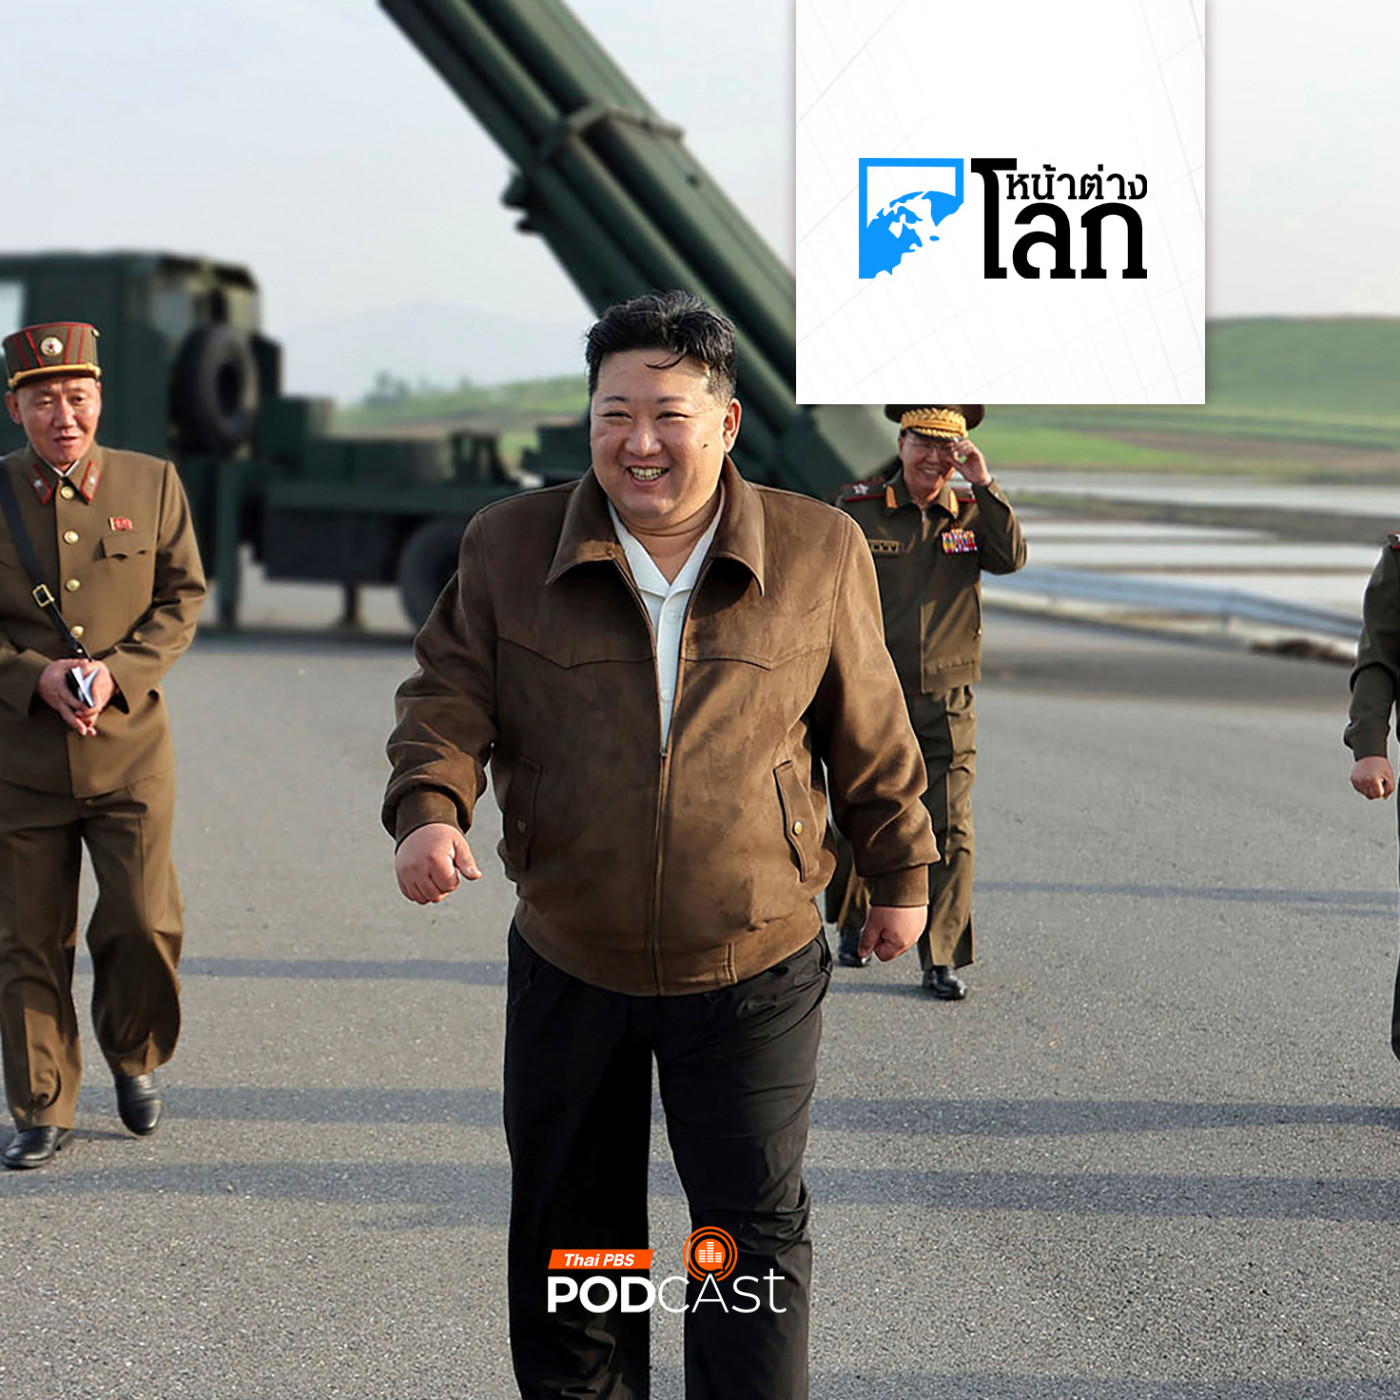 หน้าต่างโลก : เพลงเชิดชูผู้นำเกาหลีเหนือฮิตใน TikTok